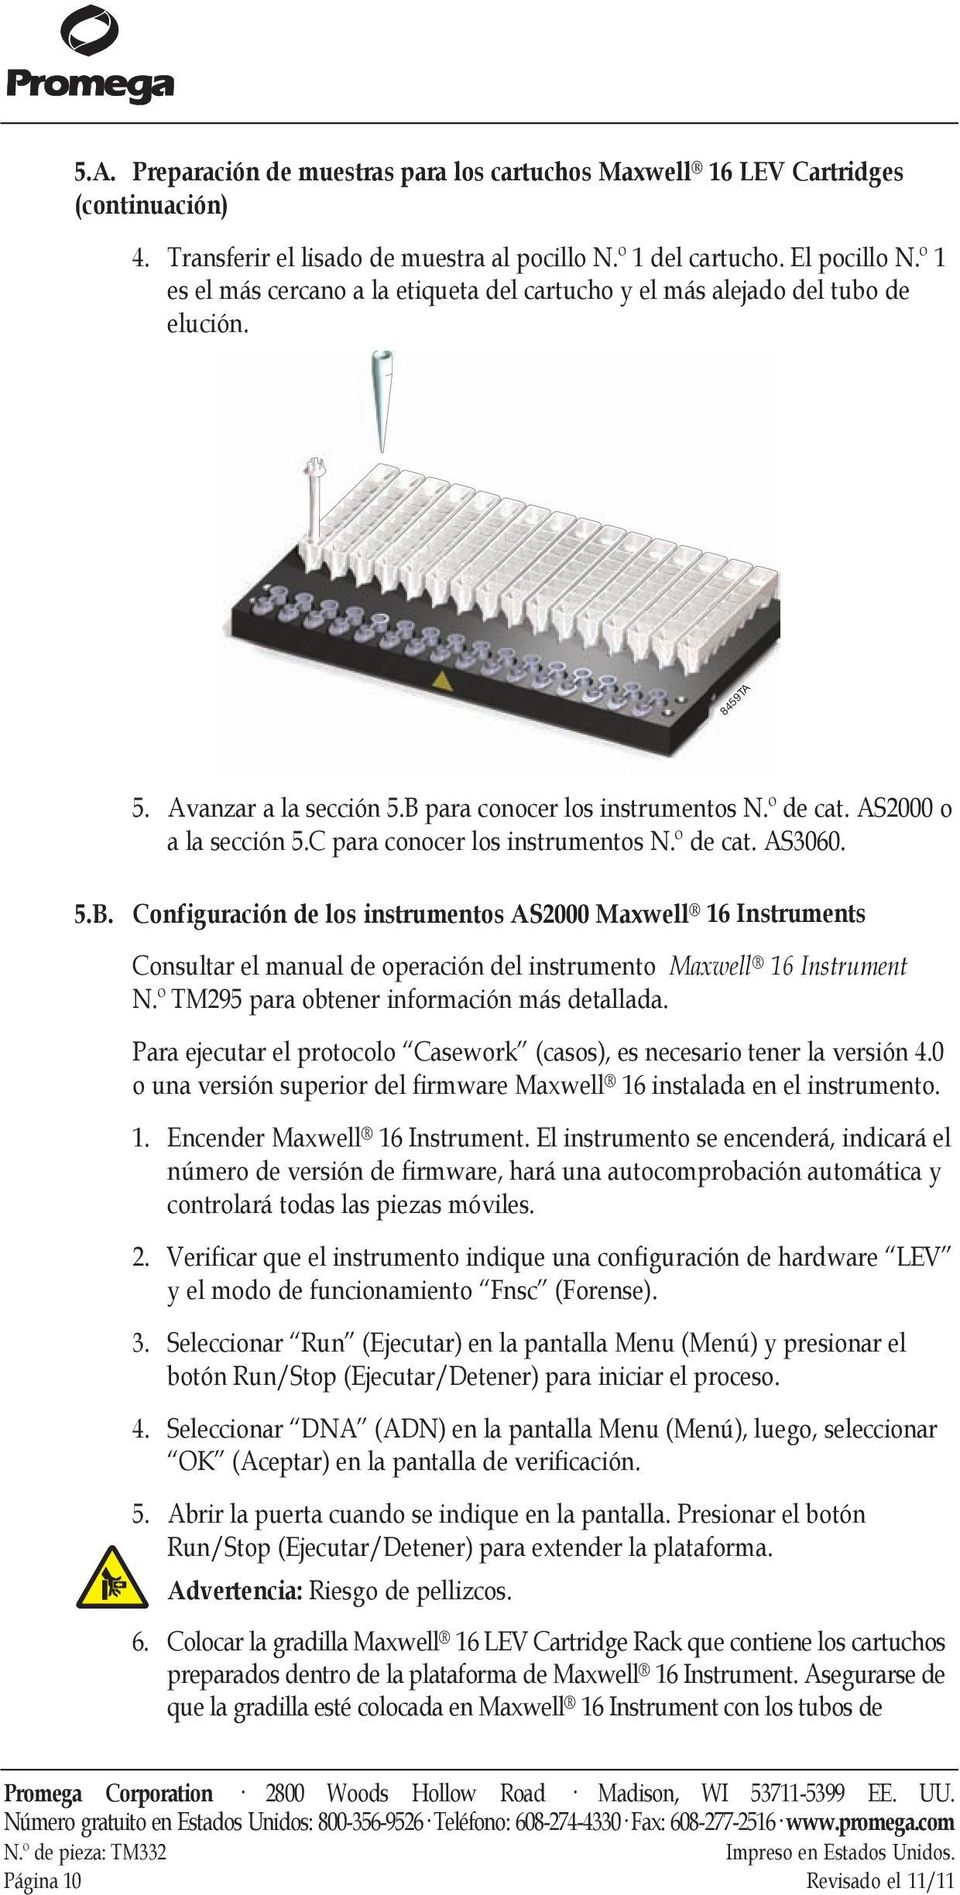 C para conocer los instrumentos N.º de cat. AS3060. Configuración de los instrumentos AS2000 Maxwell 16 Instruments Consultar el manual de operación del instrumento Maxwell 16 Instrument N.